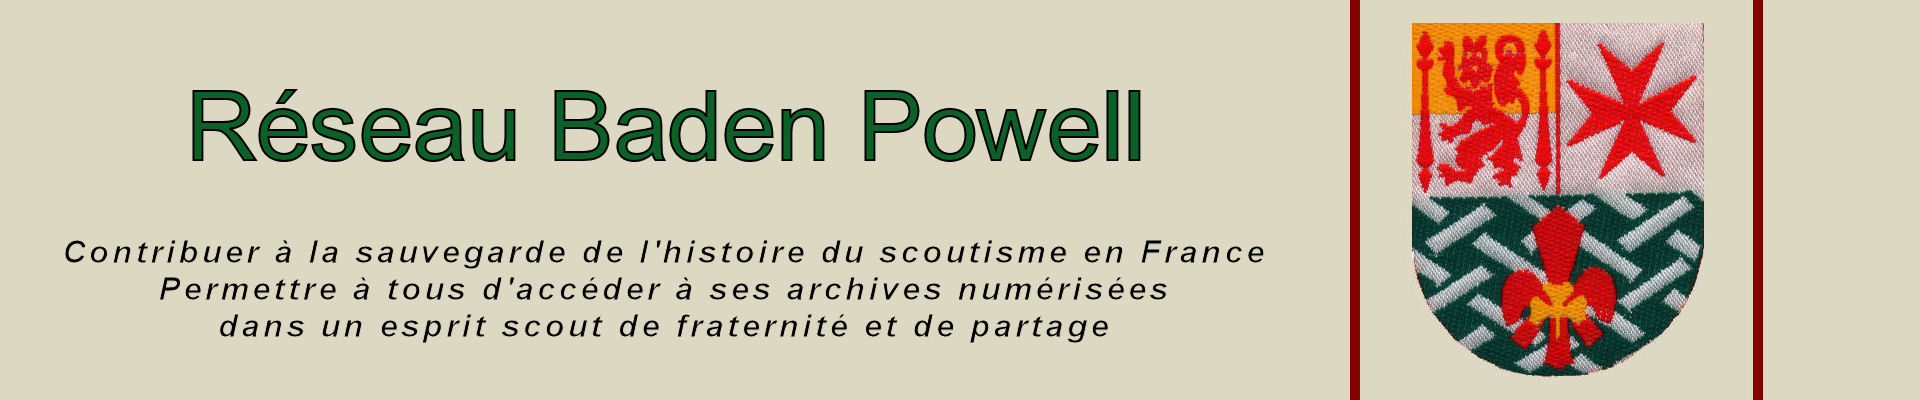 Réseau Baden Powell